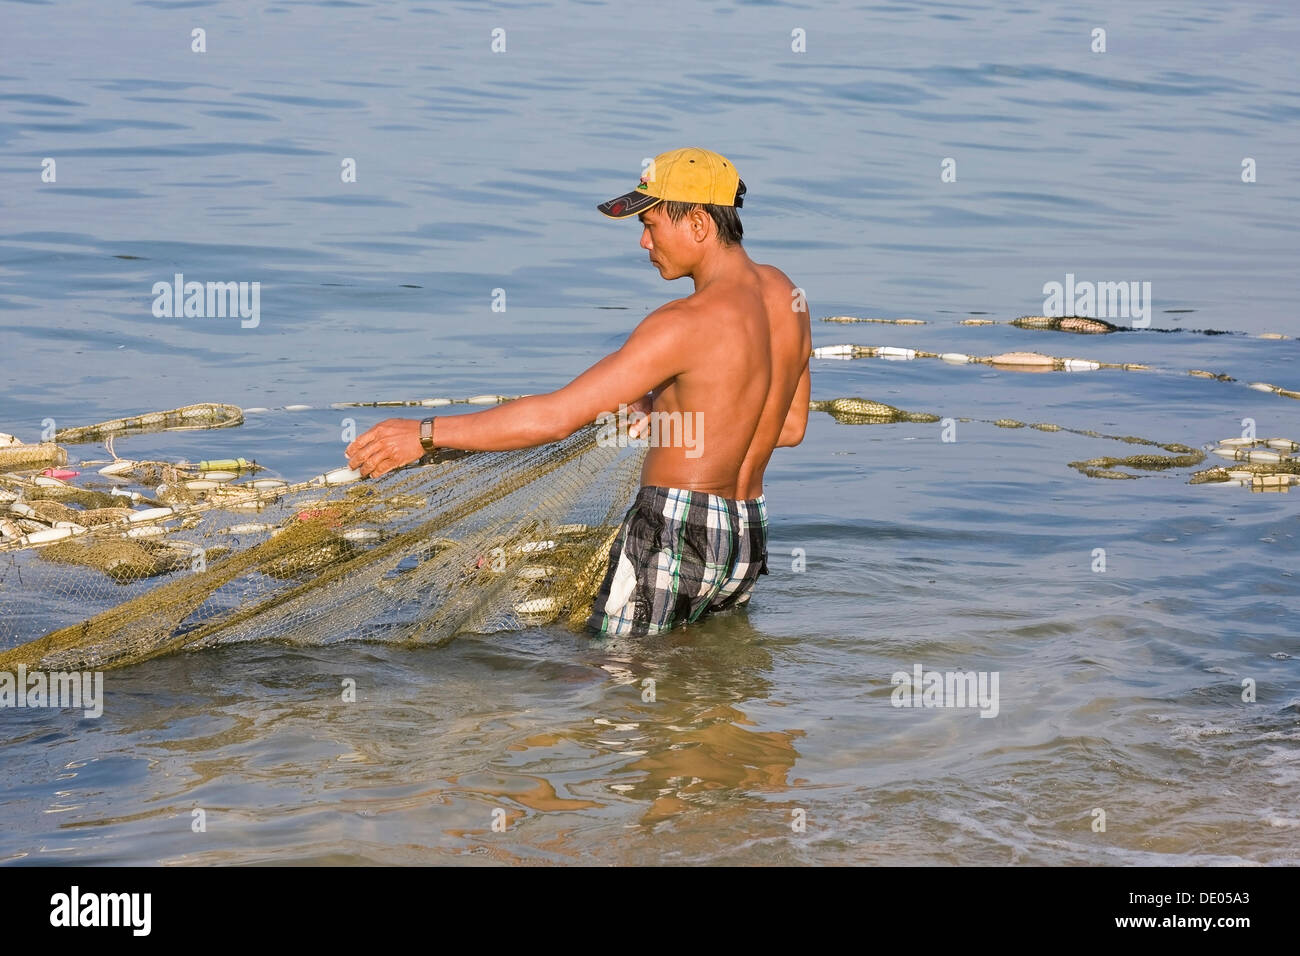 La capture du poisson pêcheur avec un filet de pêche dans la mer, l'île de Phu Quoc, Vietnam, Asie du sud-est Banque D'Images